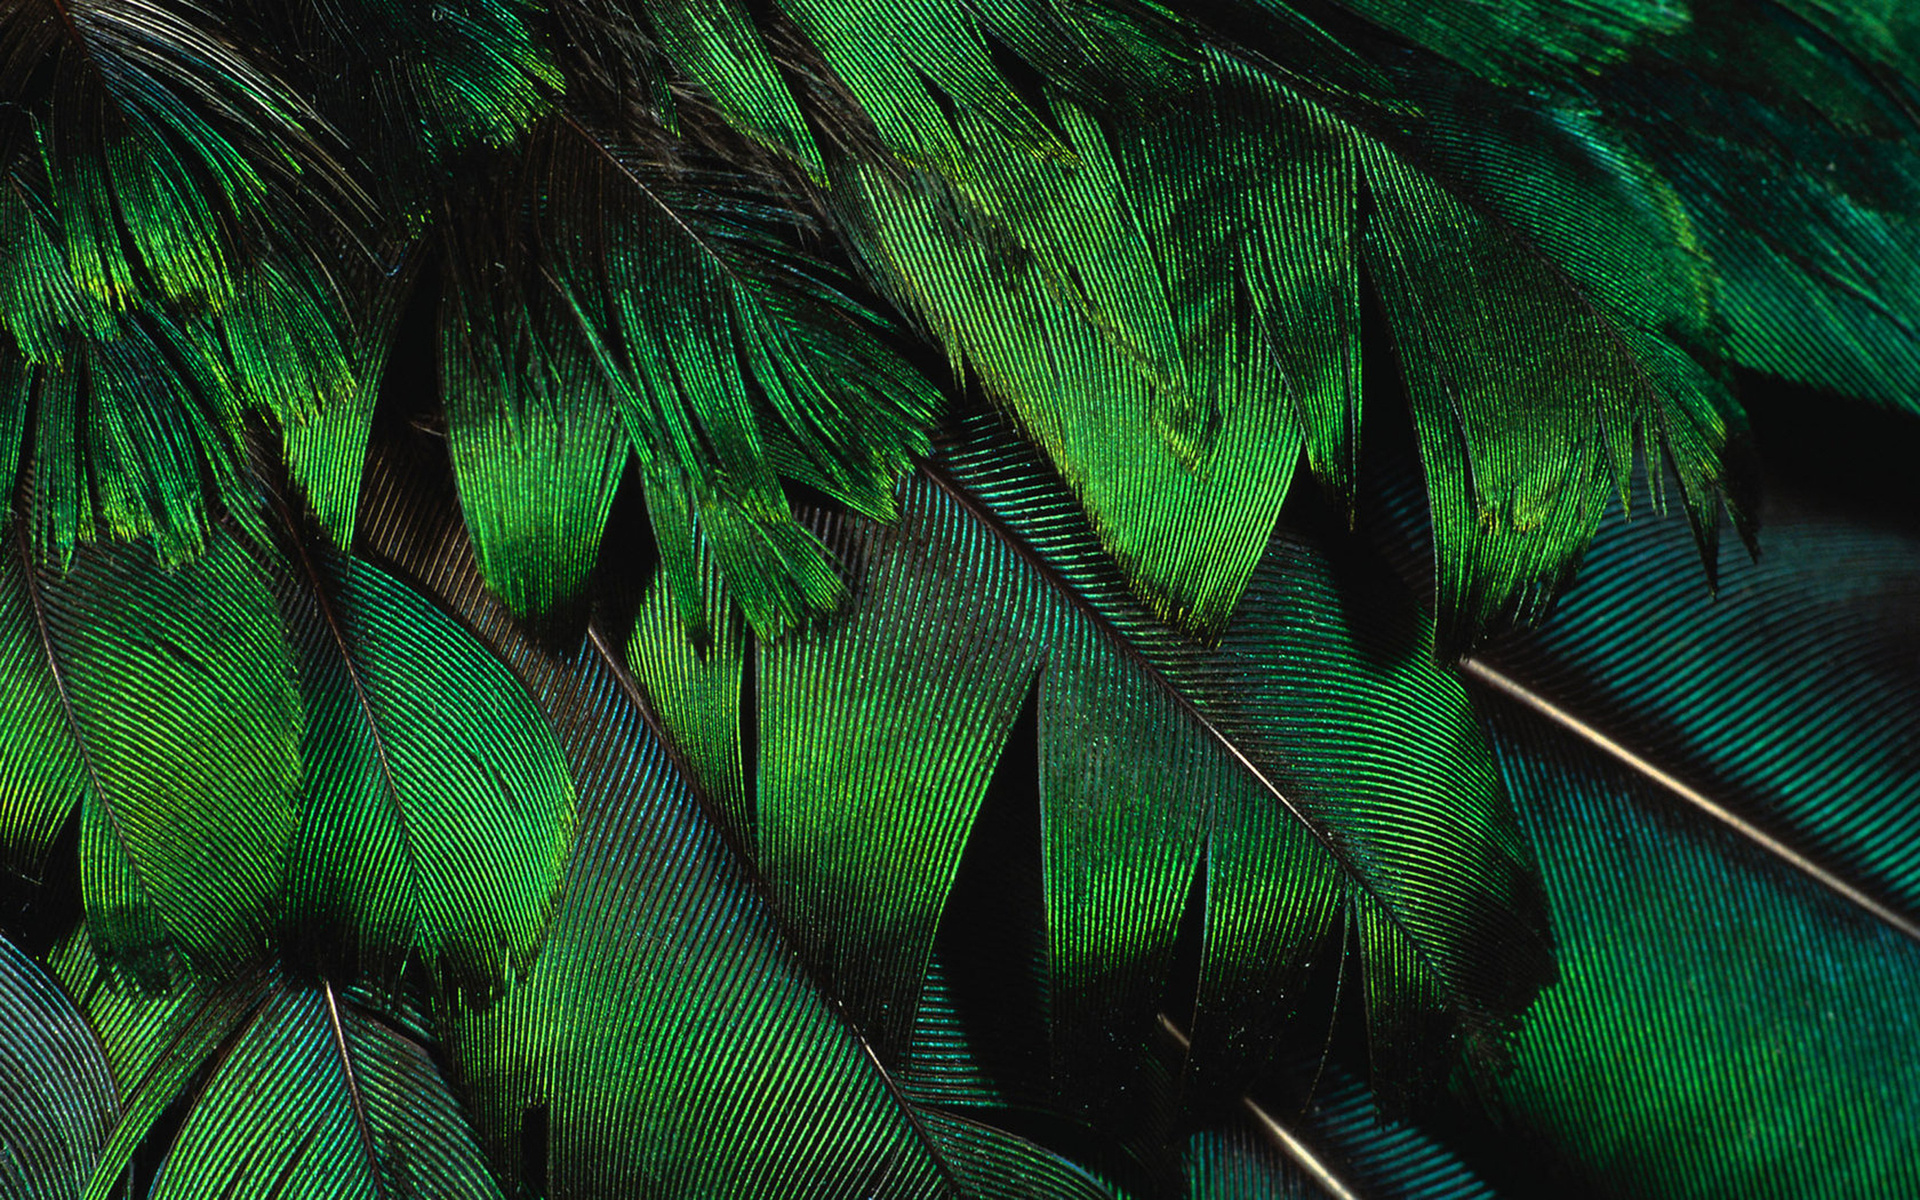 зеленые перья, текстура пера, скачать фон, фото, изображение, green feather background texture